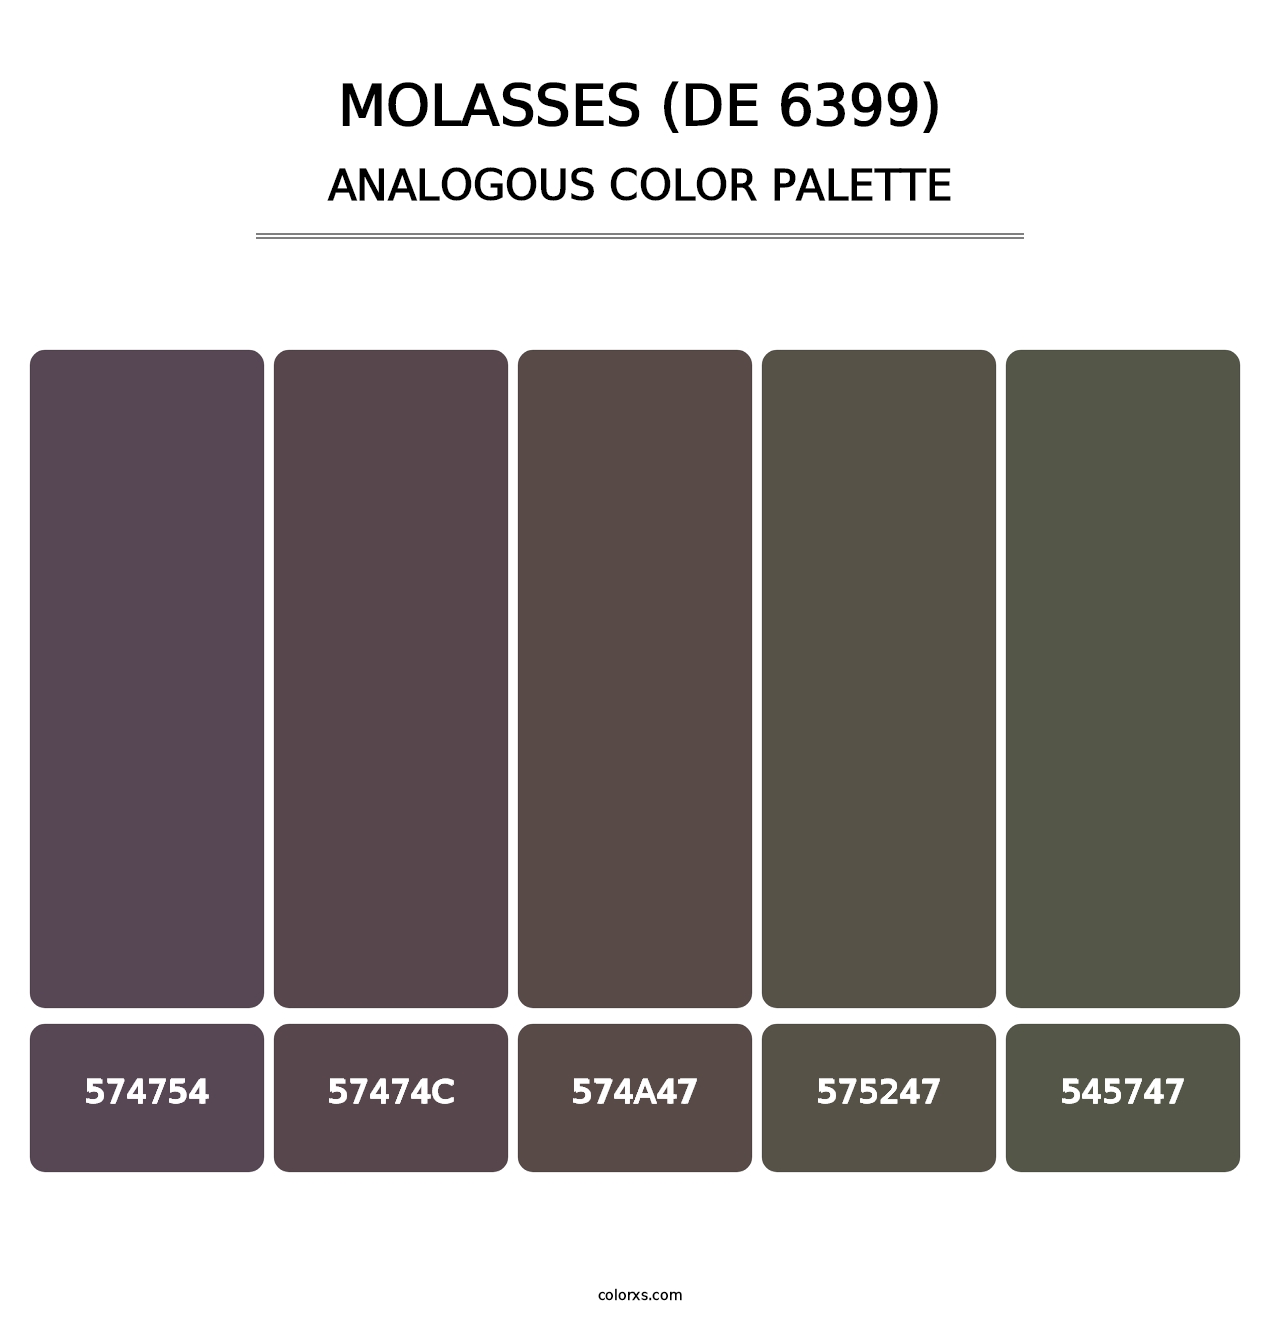 Molasses (DE 6399) - Analogous Color Palette